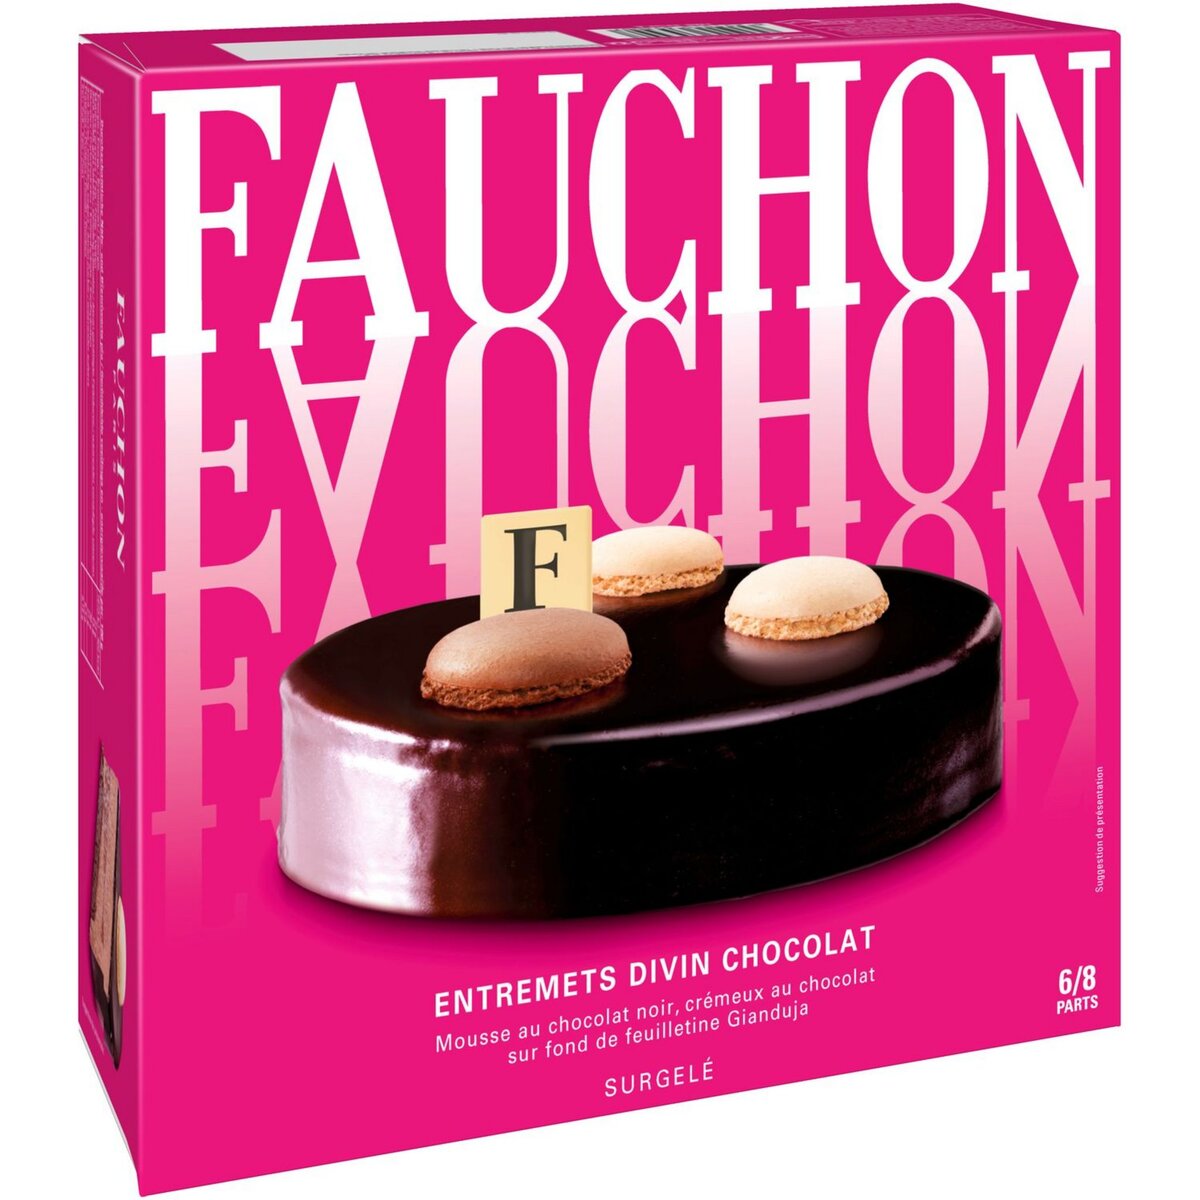 FAUCHON Fauchon Entremets divin au chocolat 535g 6-8 parts 535g